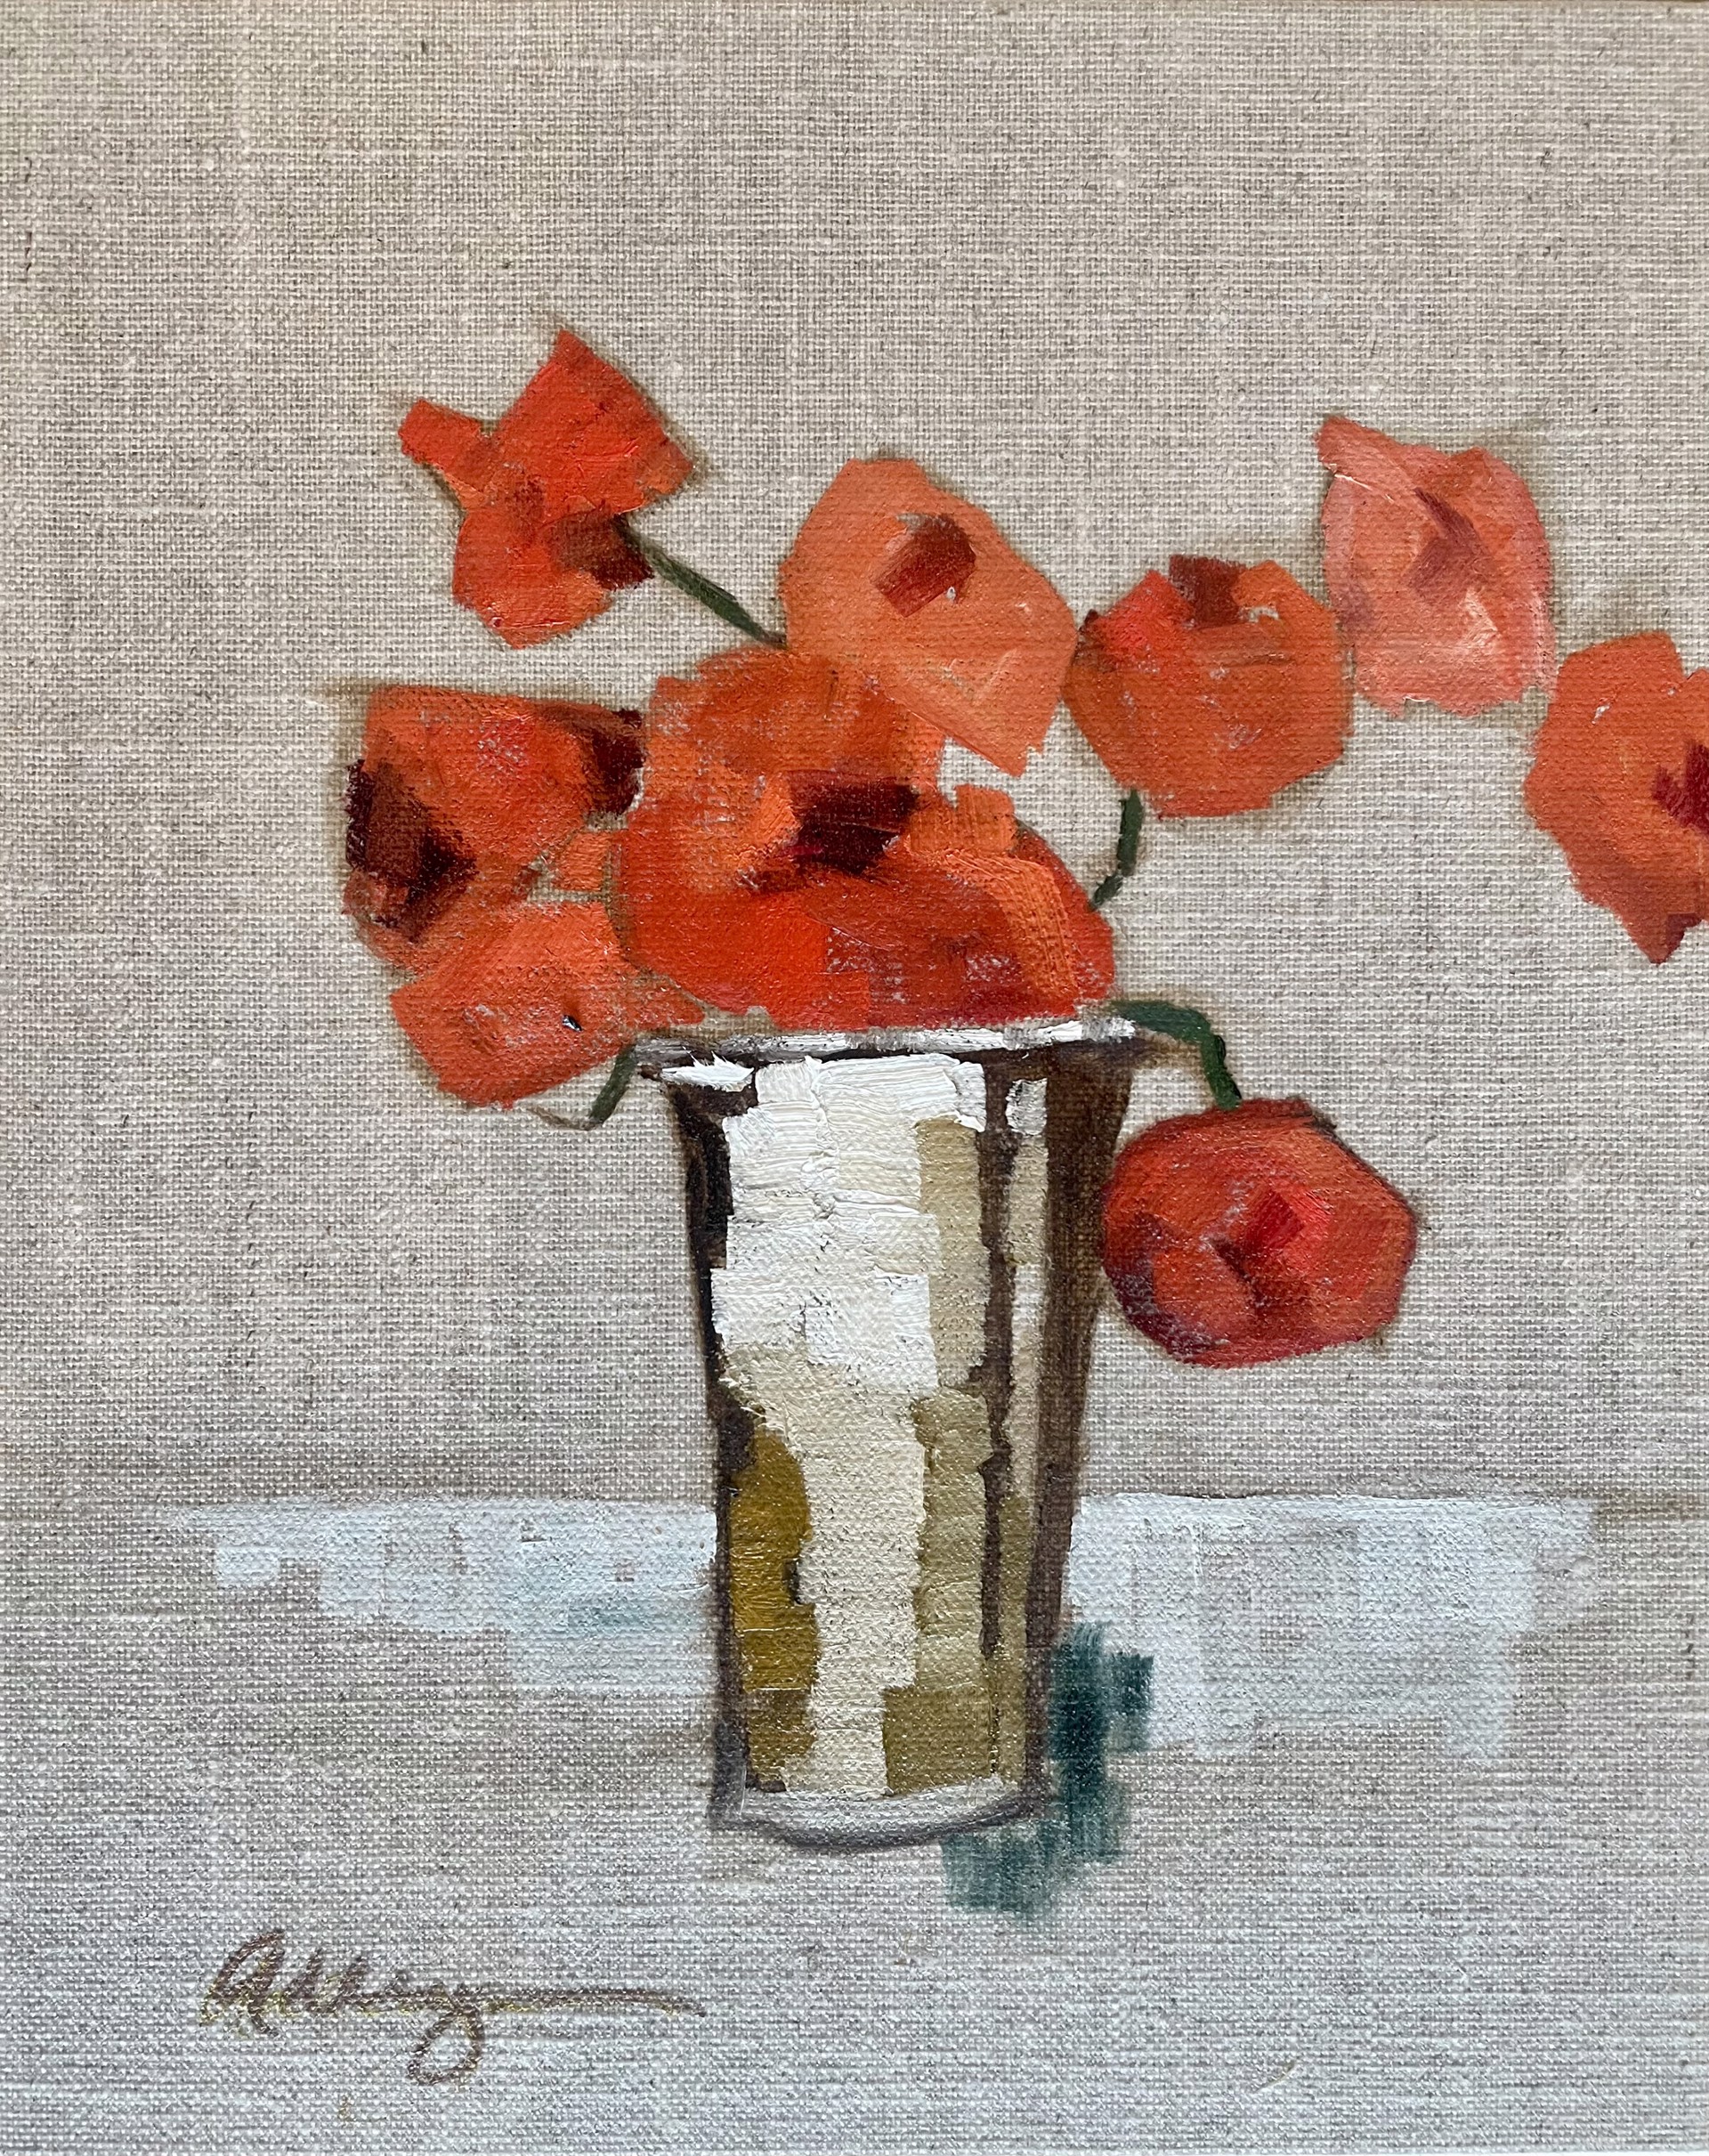 Poppies on Linen by Adleyn Scott